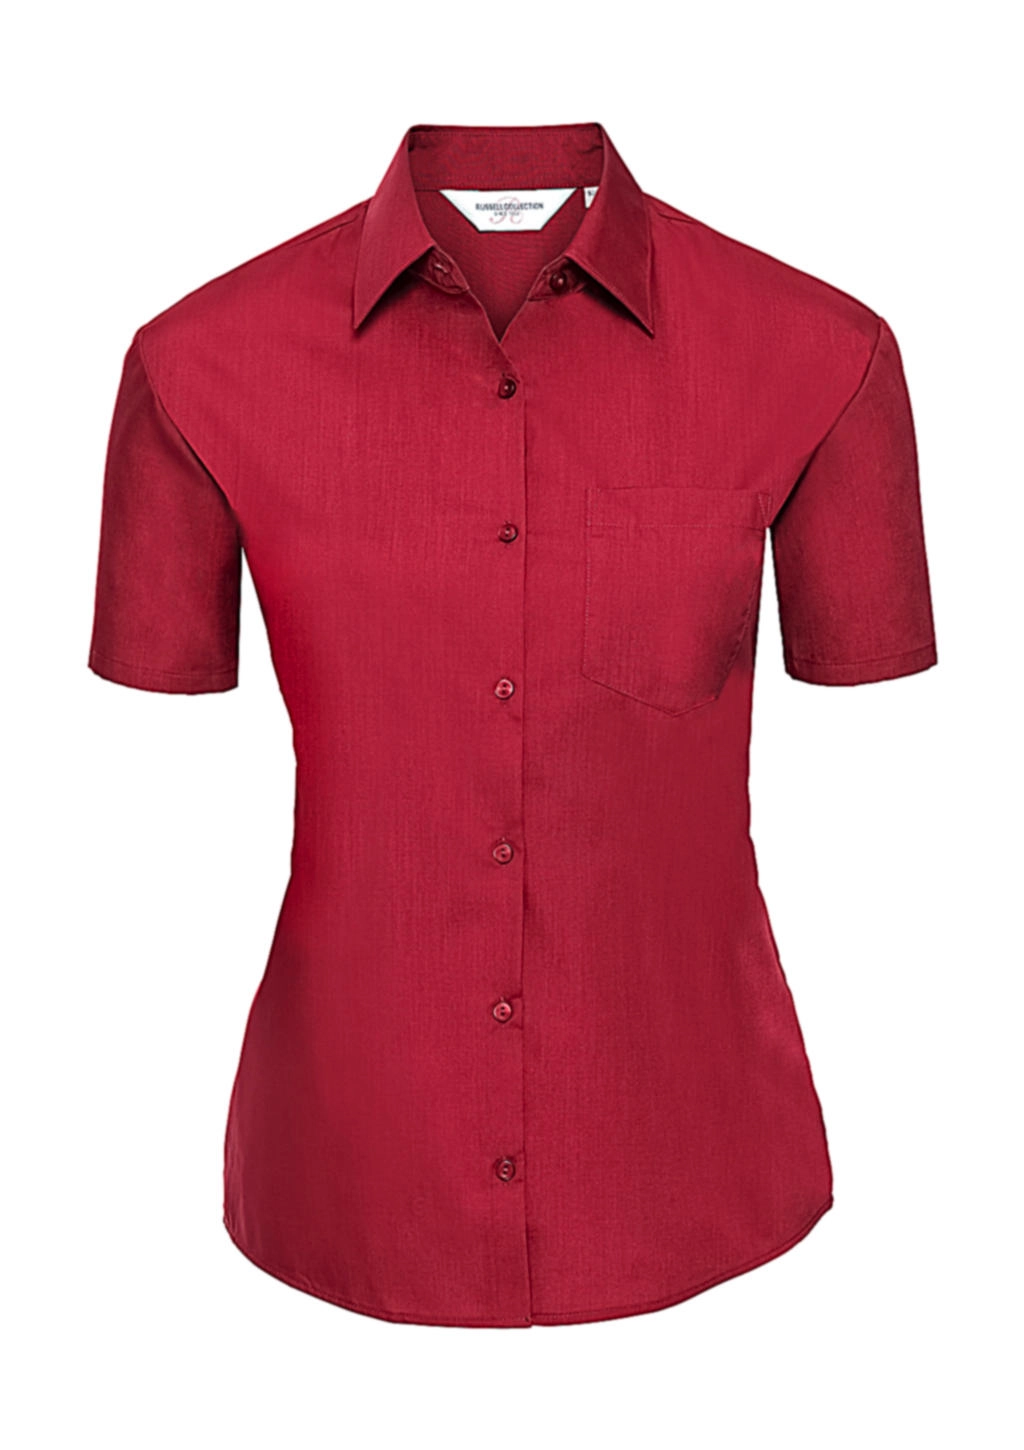 Ladies` Poplin Shirt zum Besticken und Bedrucken in der Farbe Classic Red mit Ihren Logo, Schriftzug oder Motiv.